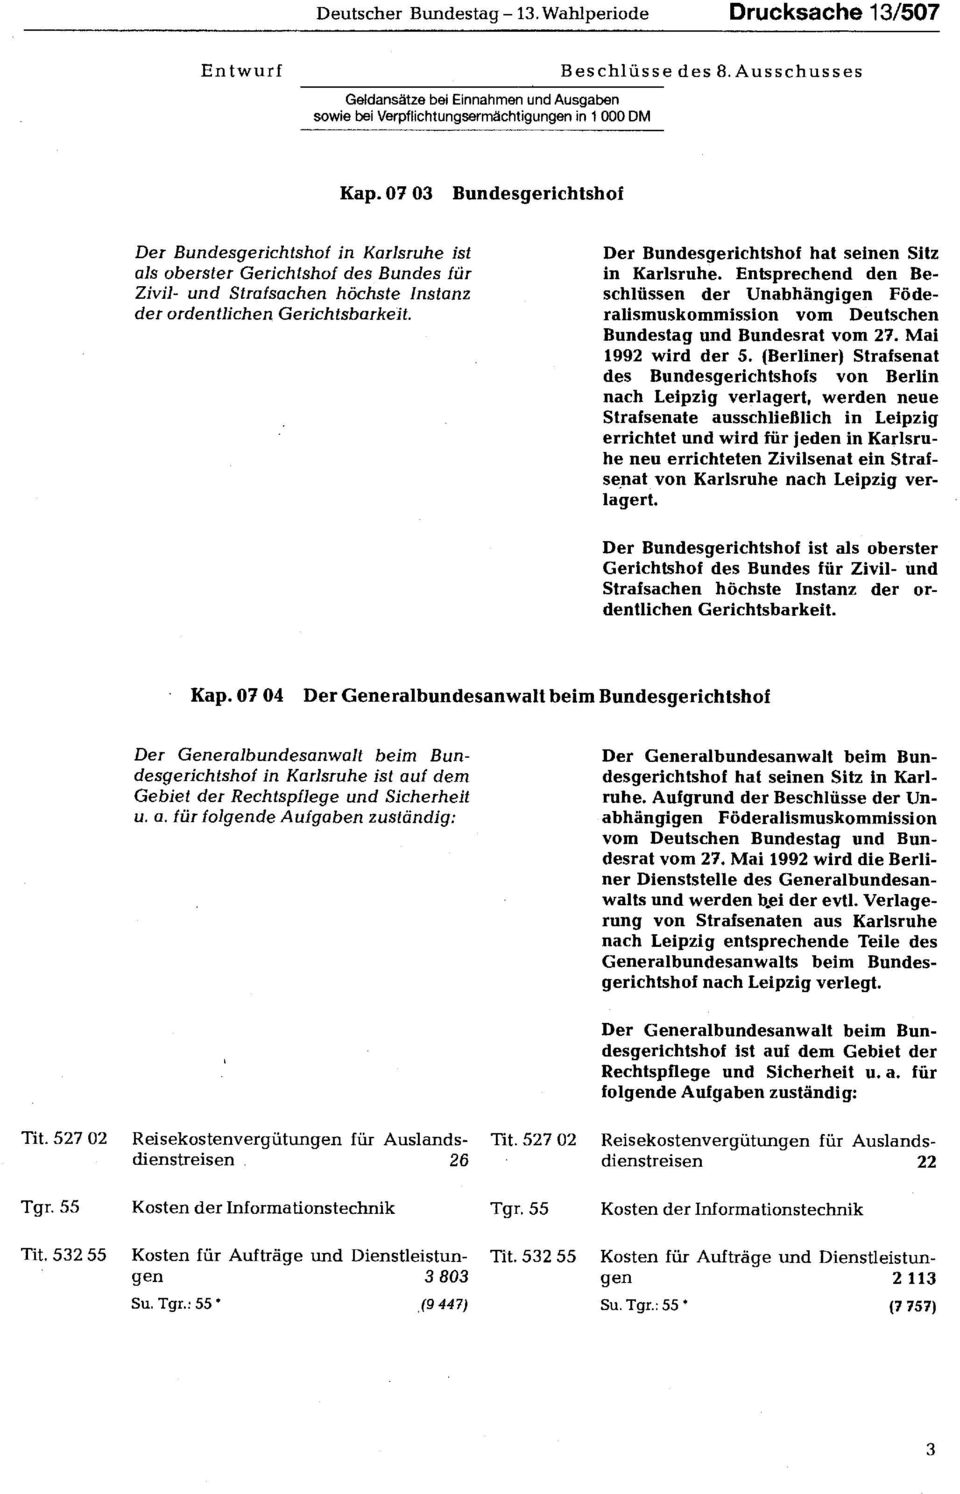 Der Bundesgerichtshof hat seinen Sitz in Karlsruhe. Entsprechend den Beschlüssen der Unabhängigen Föderalismuskommission vom Deutschen Bundestag und Bundesrat vom 27. Mai 1992 wird der 5.